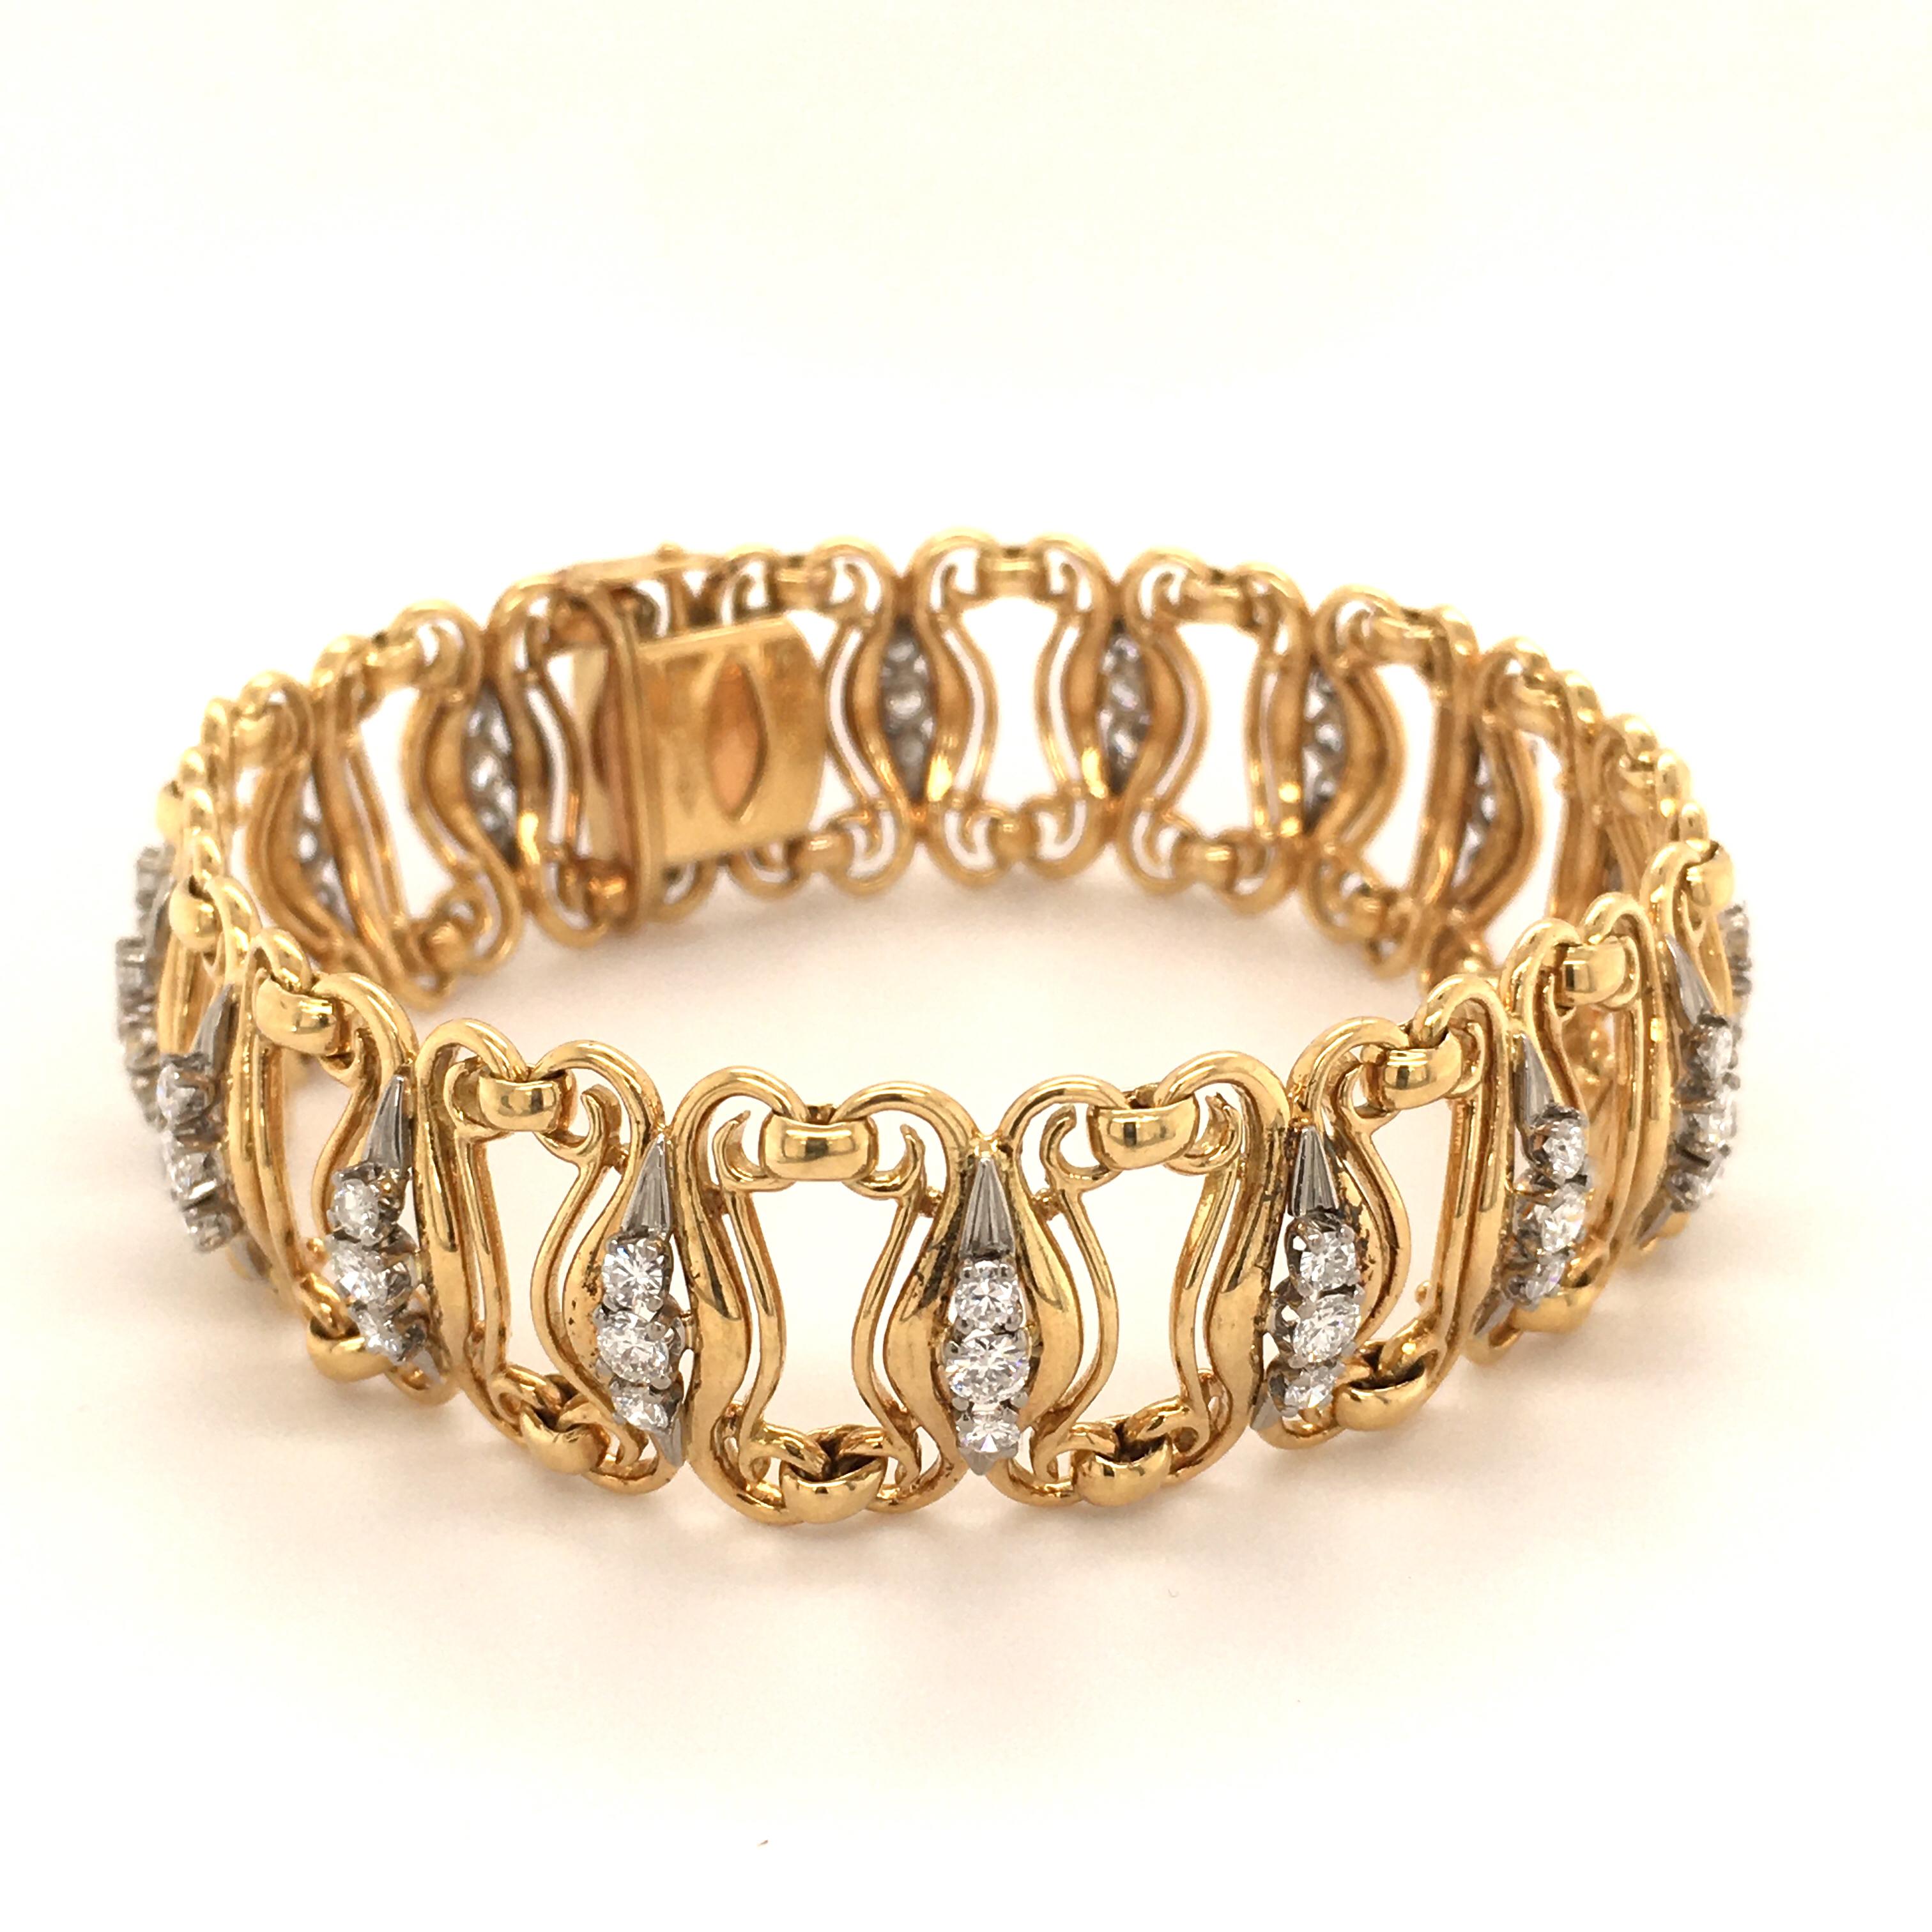 750 white gold bracelet price